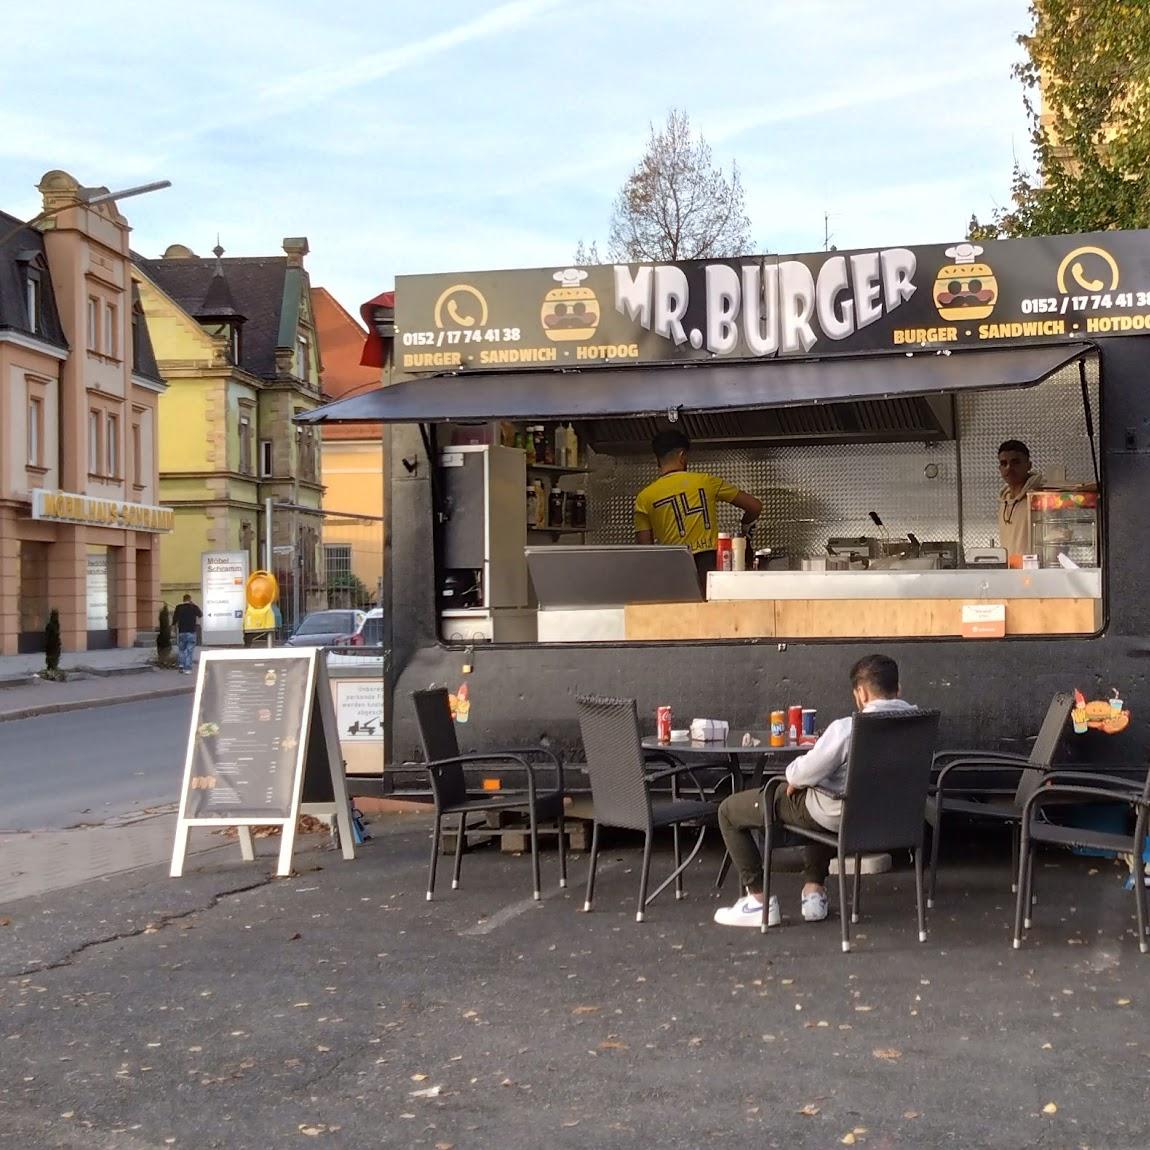 Restaurant "Mr. Burger" in Forchheim